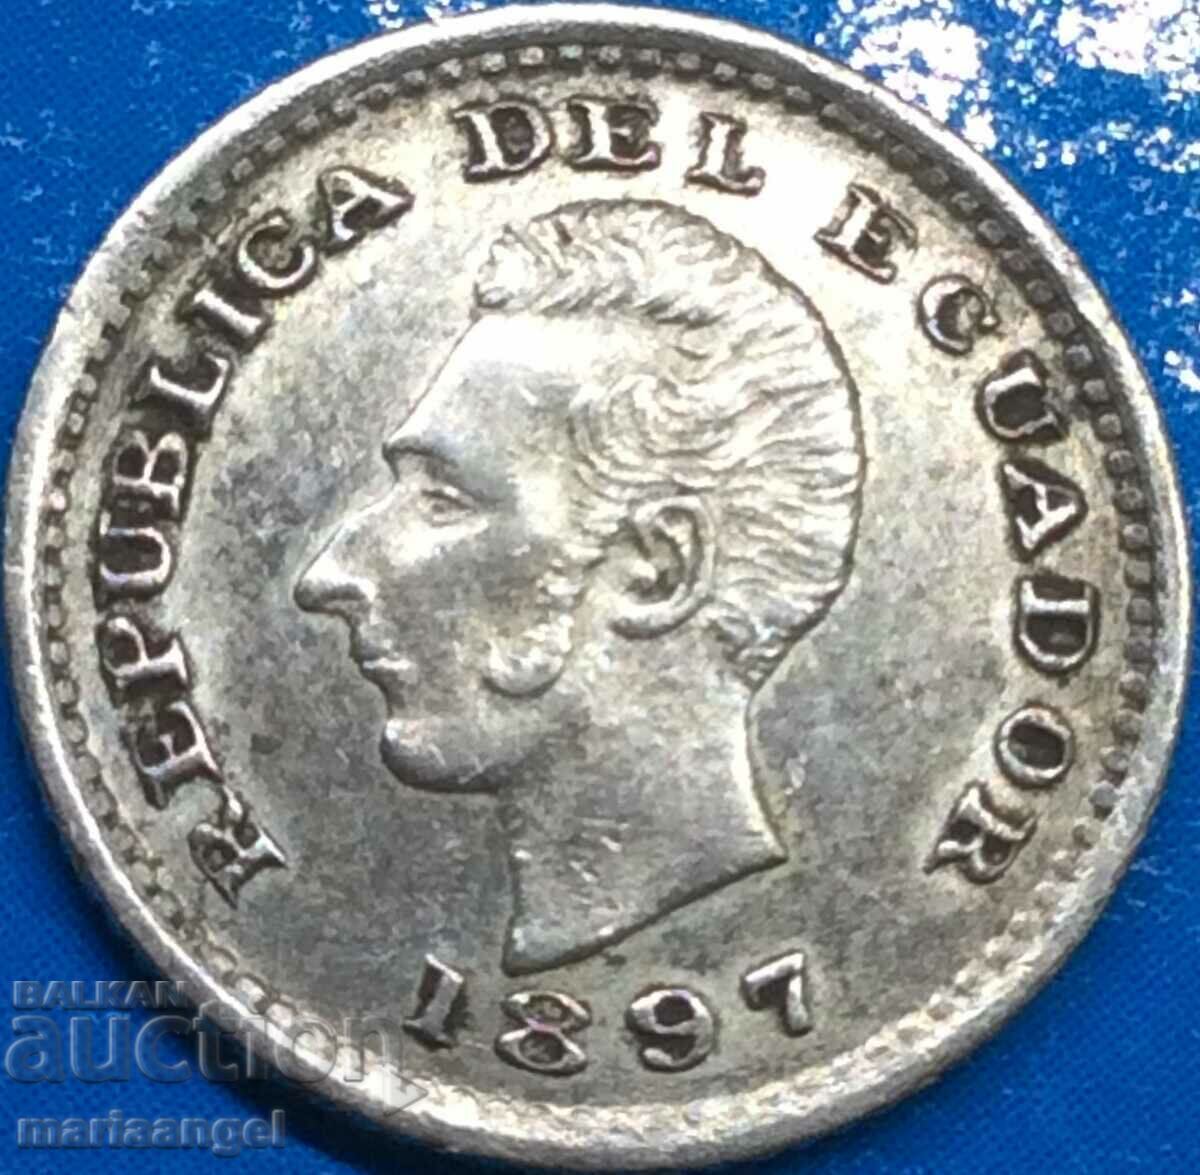 Ecuador Sucre Ecuador 1/2 decim de sucre 1897 argint